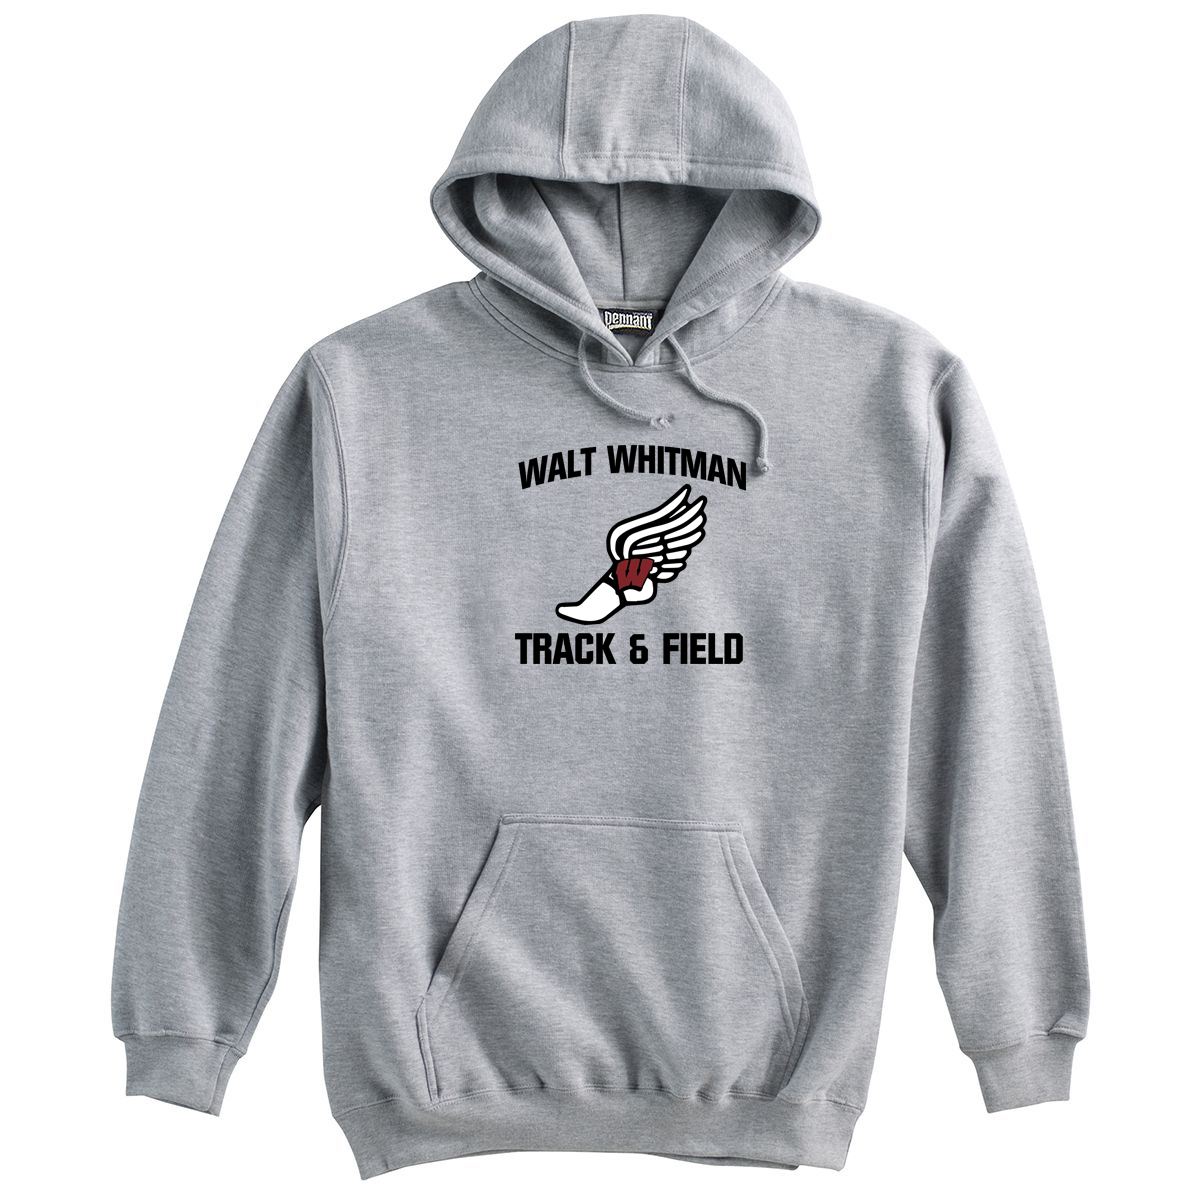 Whitman Track & Field Sweatshirt